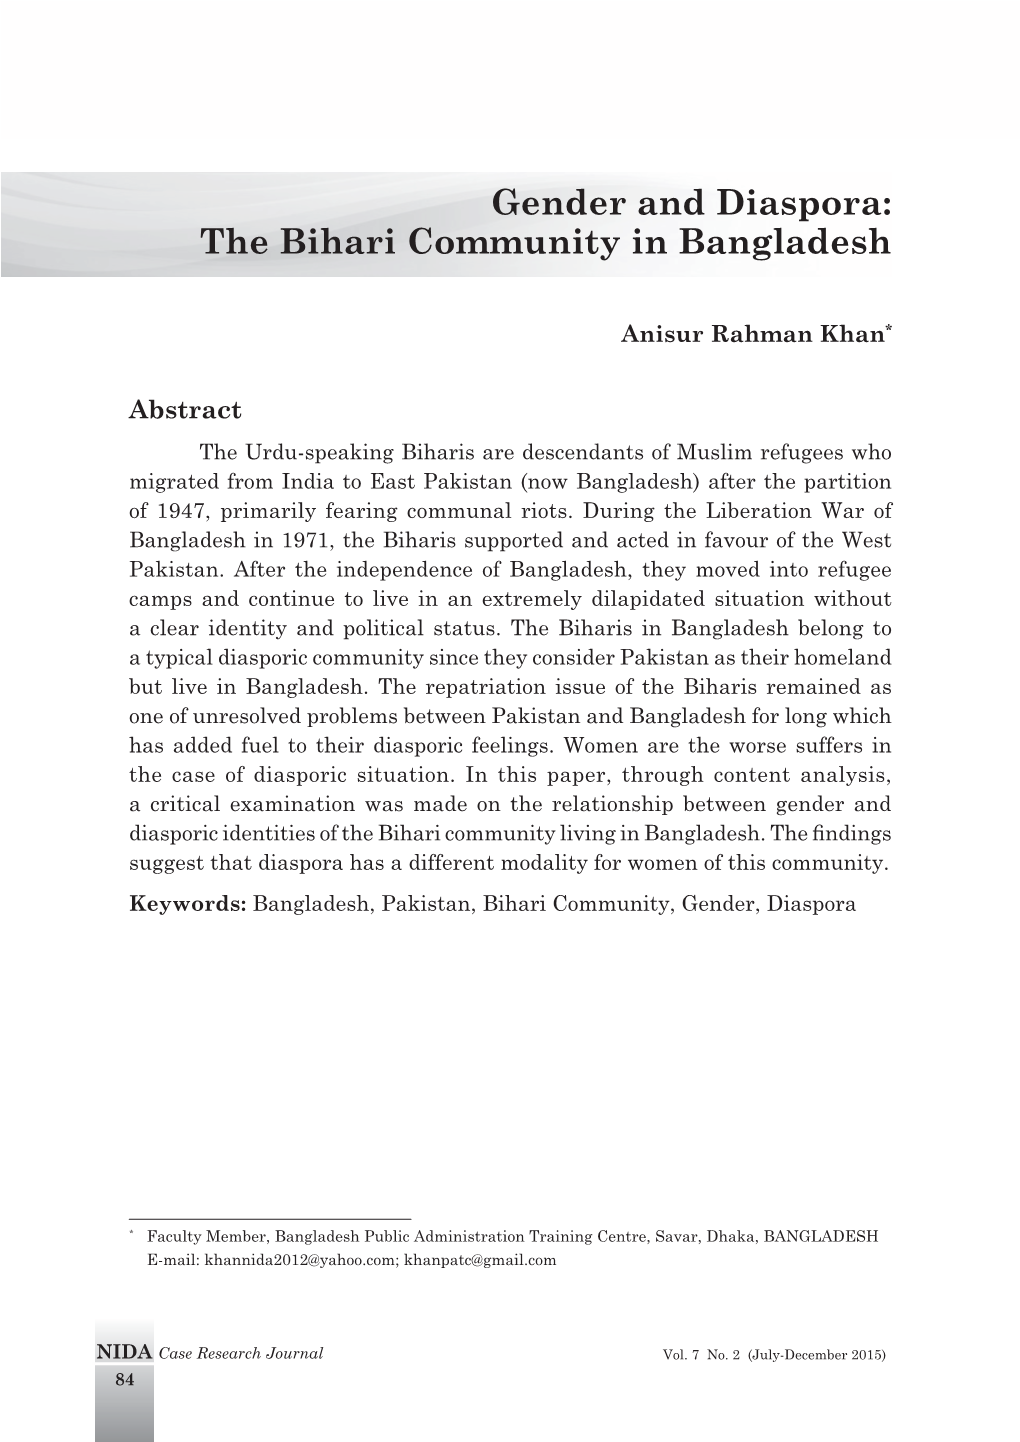 The Bihari Community in Bangladesh